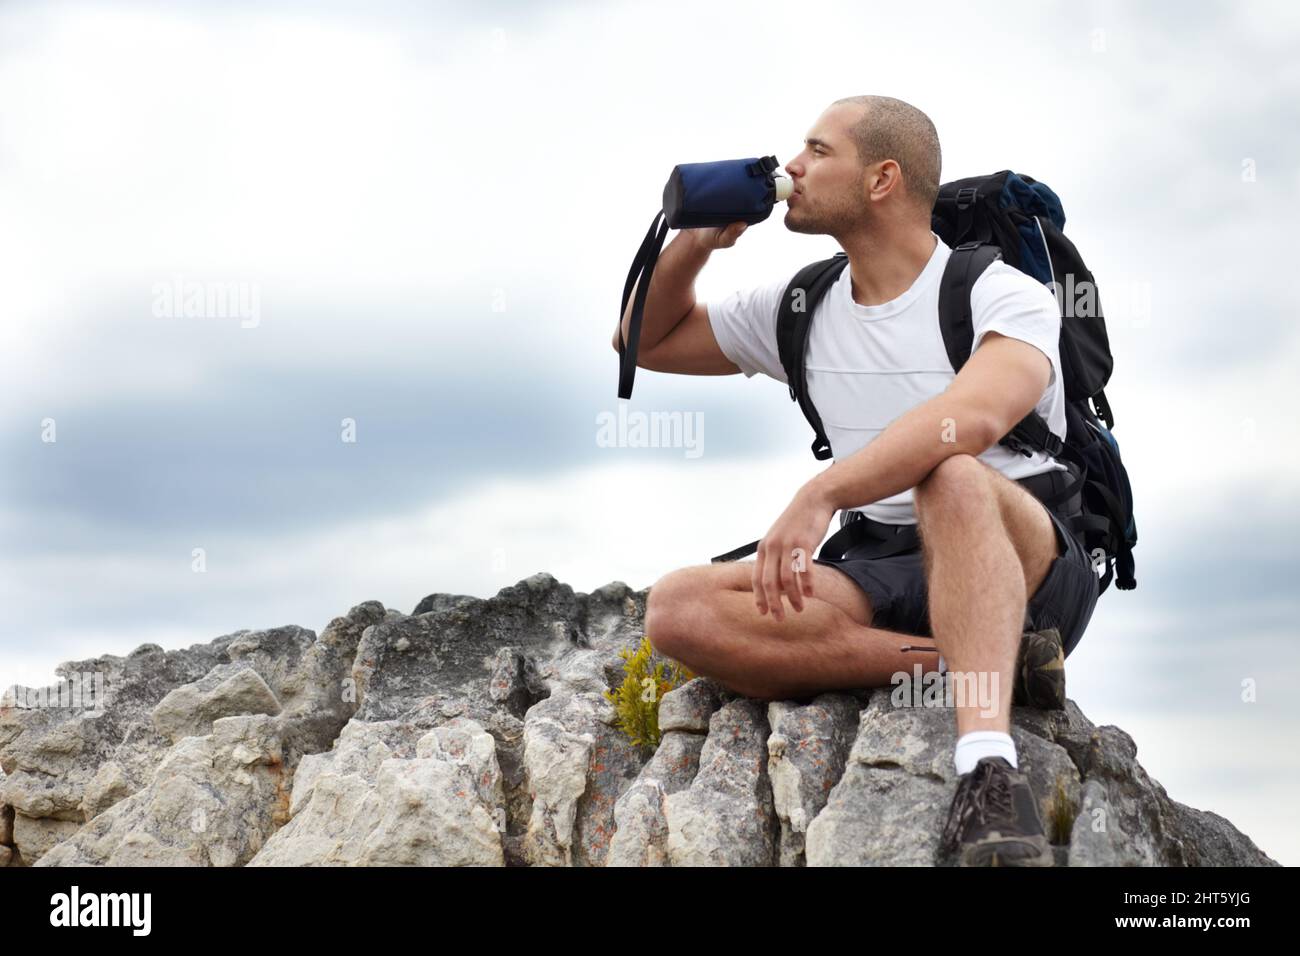 Percorrere la strada meno percorsa. Un giovane uomo che fa una pausa dalle escursioni mentre si siede su una roccia e beve un po' d'acqua. Foto Stock